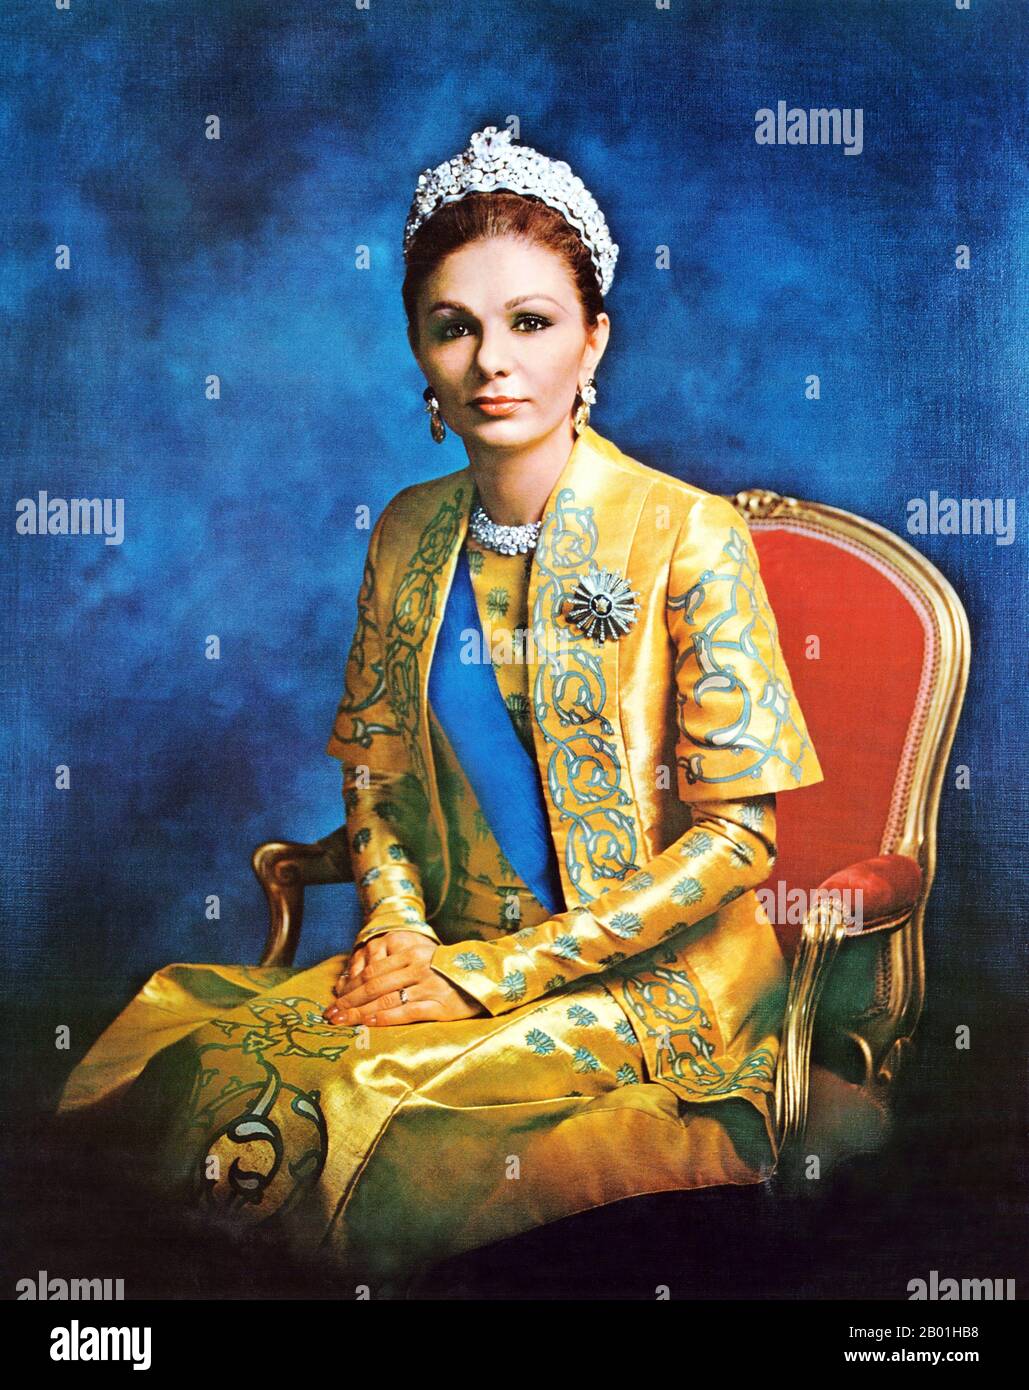 Iran/Perse : Portrait officiel de l'impératrice Farah Pahlavi (née le 13 octobre 1938), épouse et veuve de Mohammad Reza Pahlavi (1919-1979), dernier Shah d'Iran, 1973. Farah Pahlavi, née Farah Diba, est l'ancienne reine et impératrice d'Iran. Elle est la veuve de Mohammad Reza Pahlavi, le Shah d'Iran, et seule impératrice (Shahbanou) de l'Iran moderne. Elle est reine consort d'Iran de 1959 à 1967 et impératrice consort de 1967 jusqu'à son exil en 1979. Banque D'Images